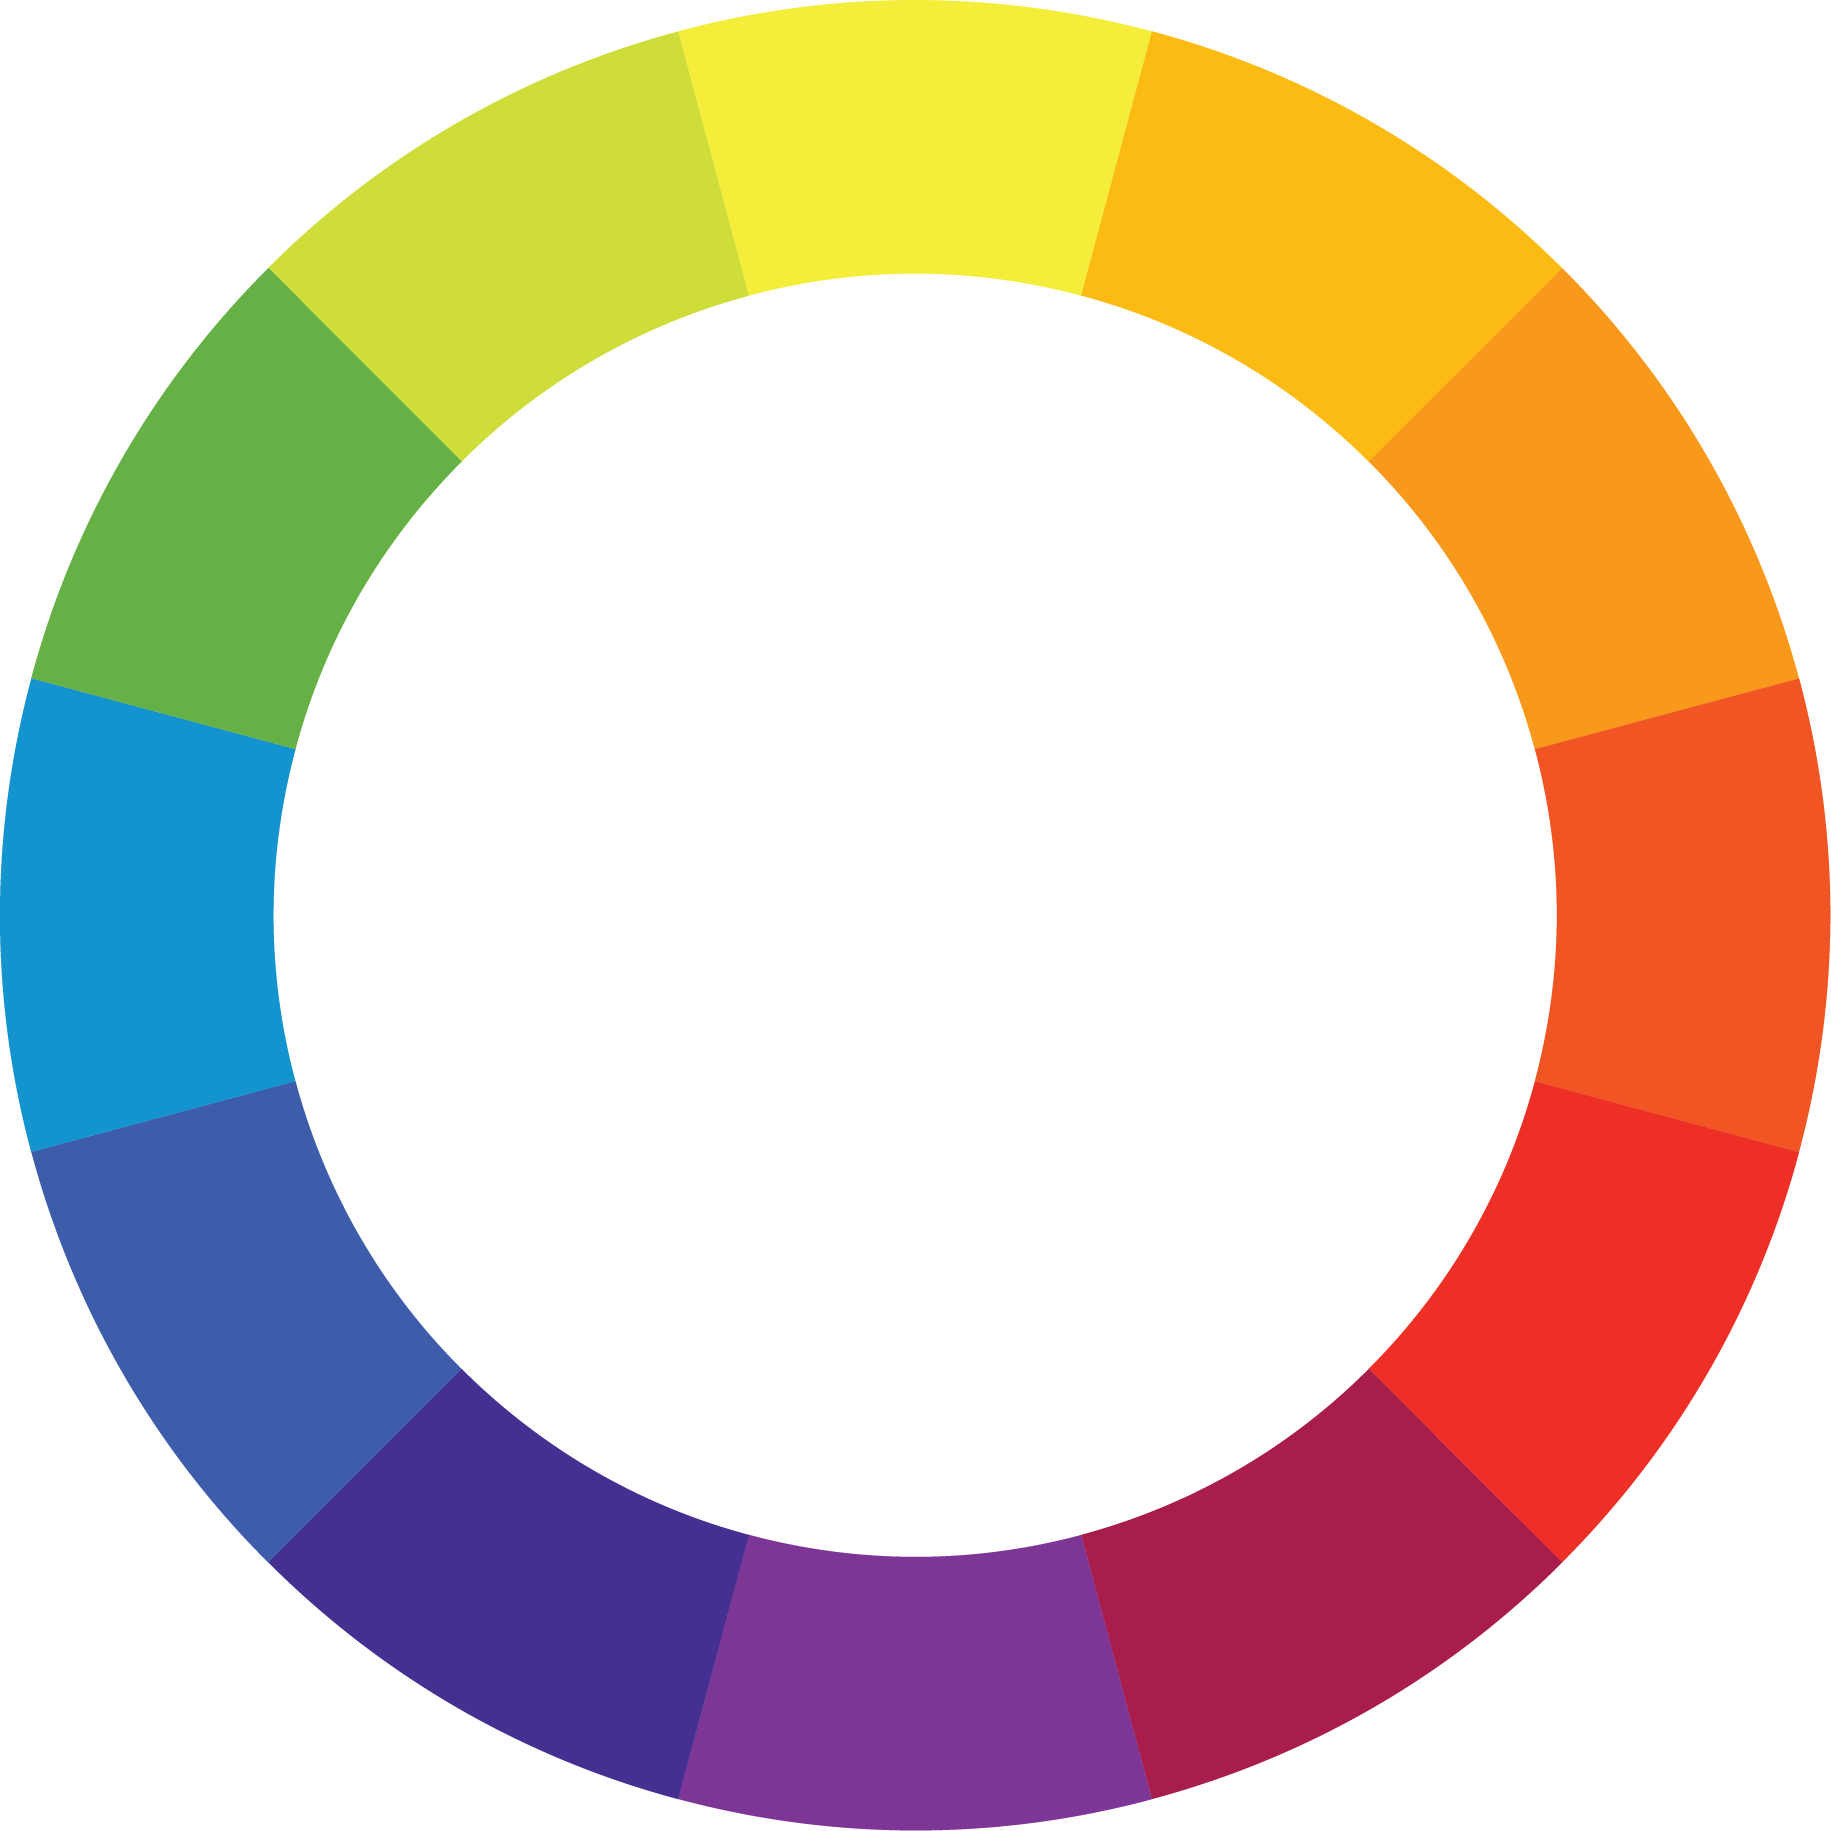 färgcirkeln, RYB-systemet (Red-Yellow-Blue)